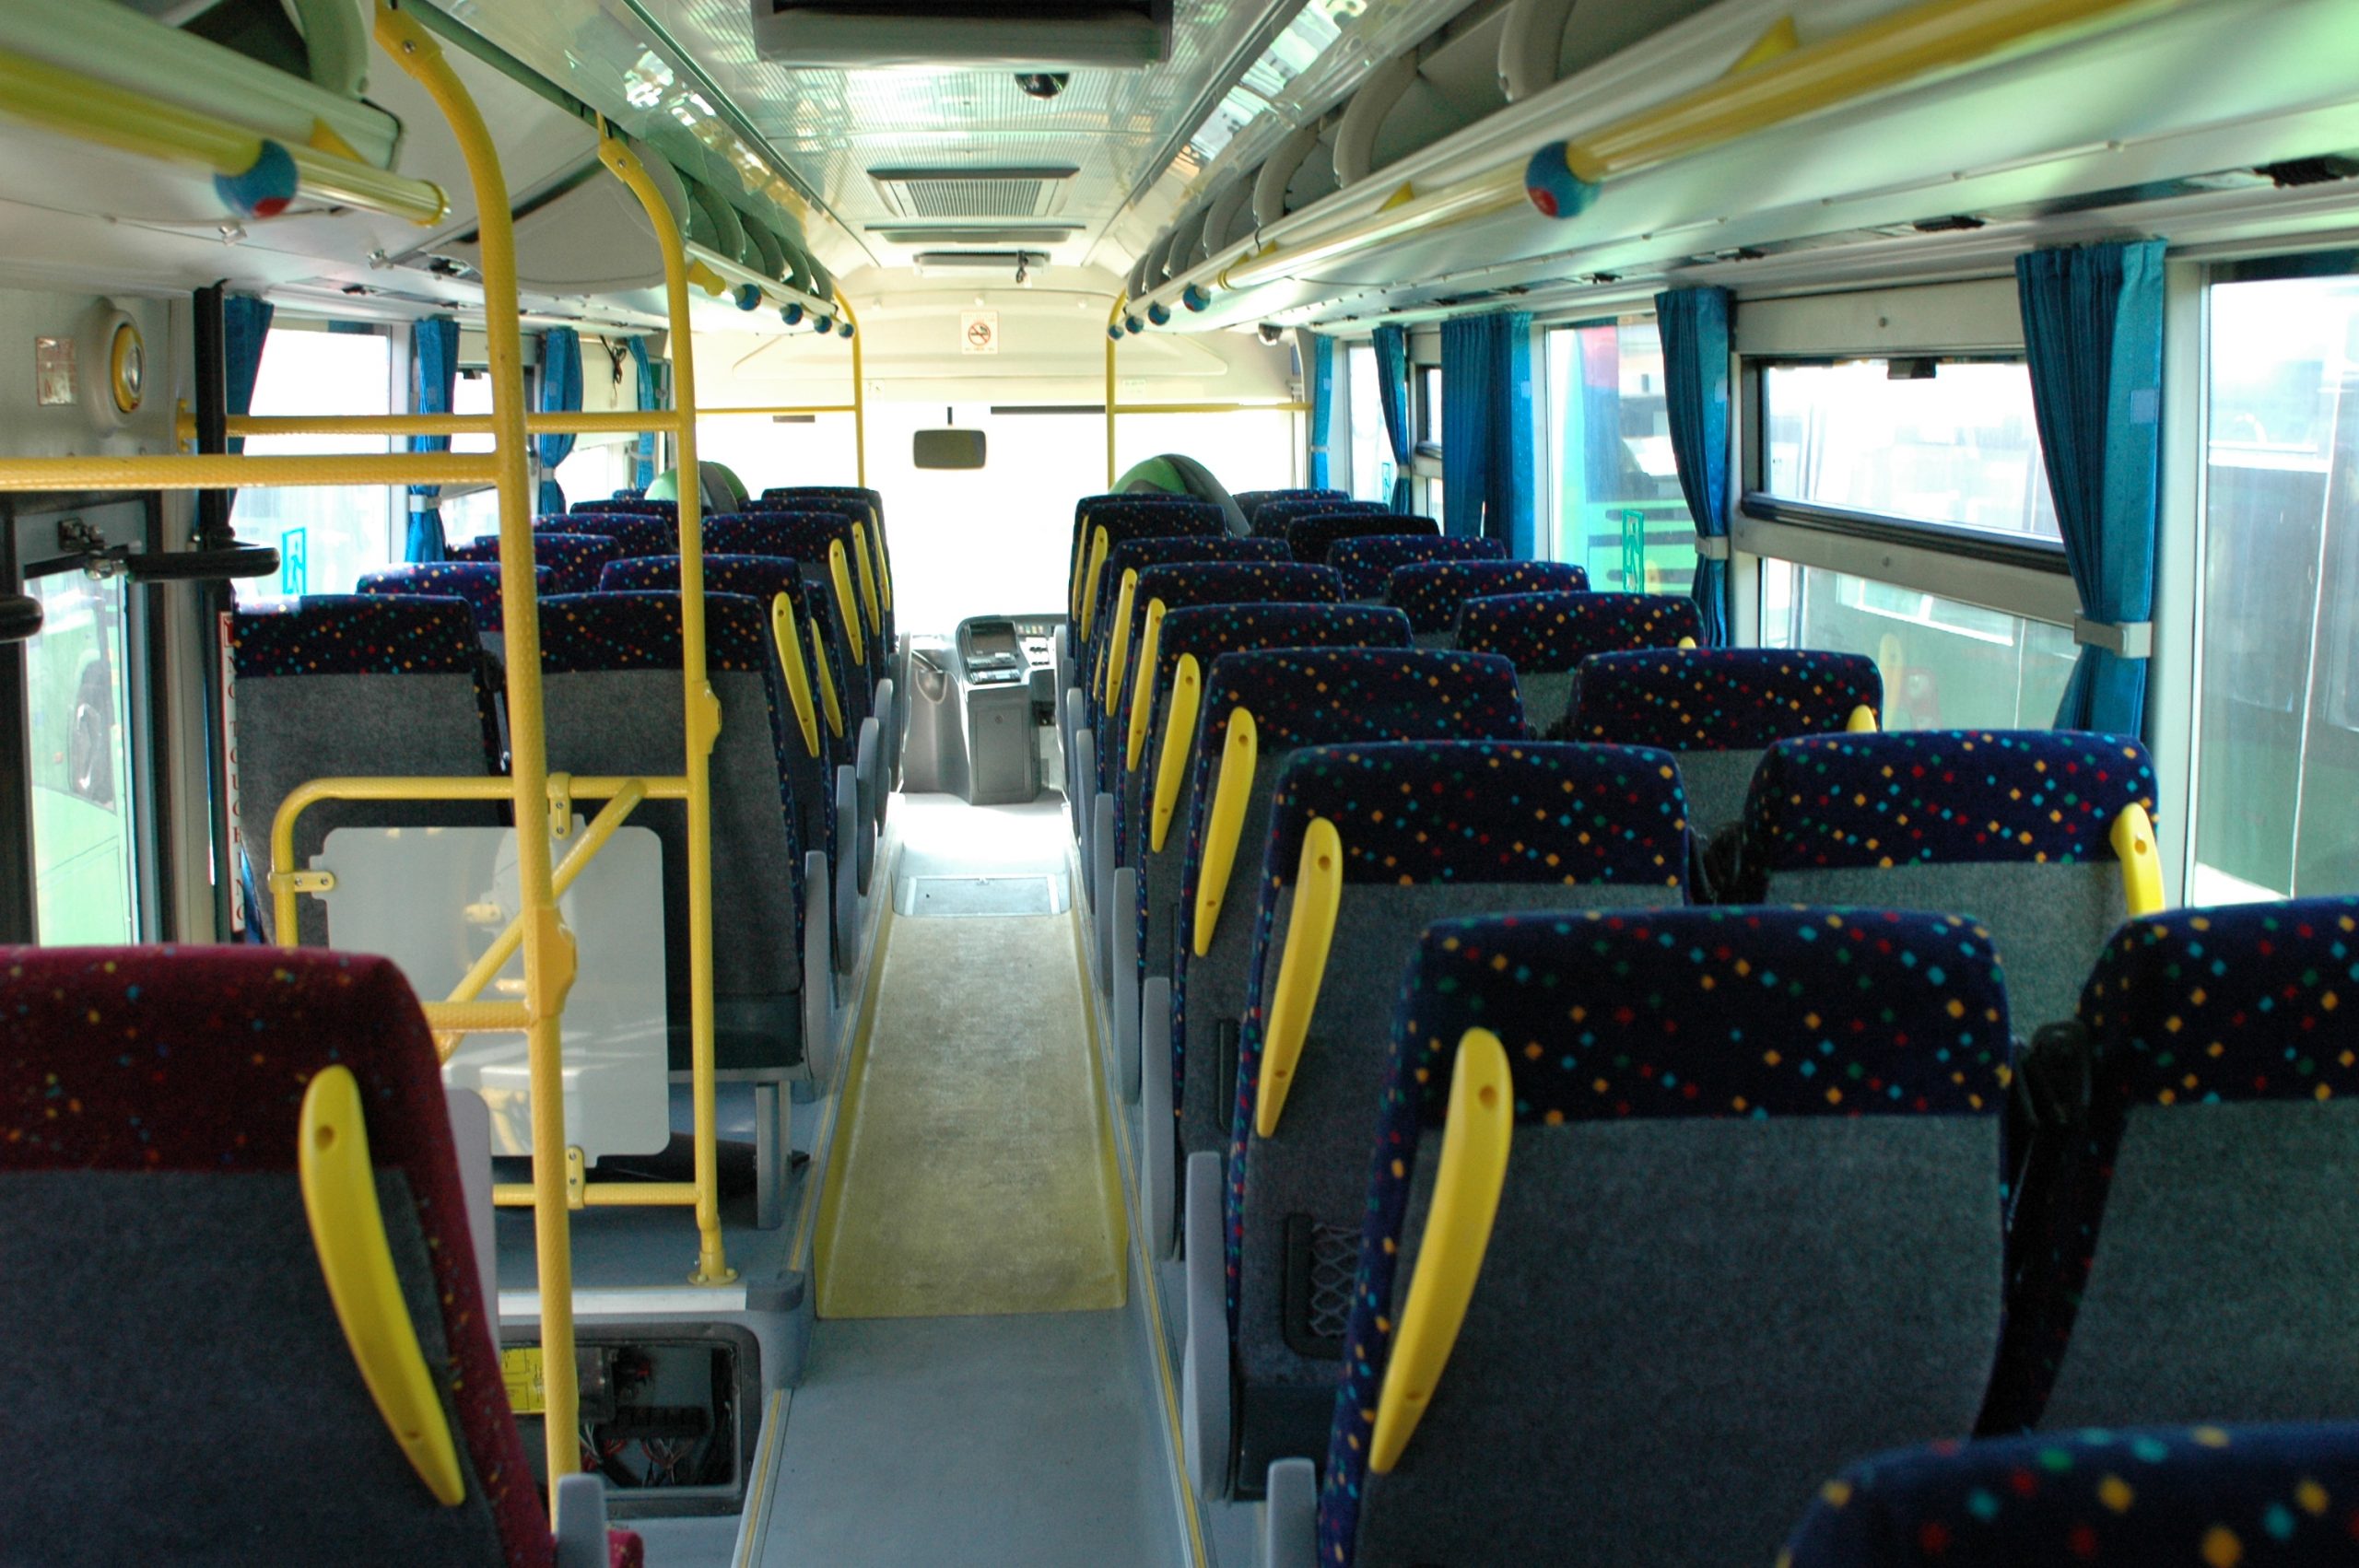 Νόμος για υποχρεωτική παράταση στα λεωφορεία